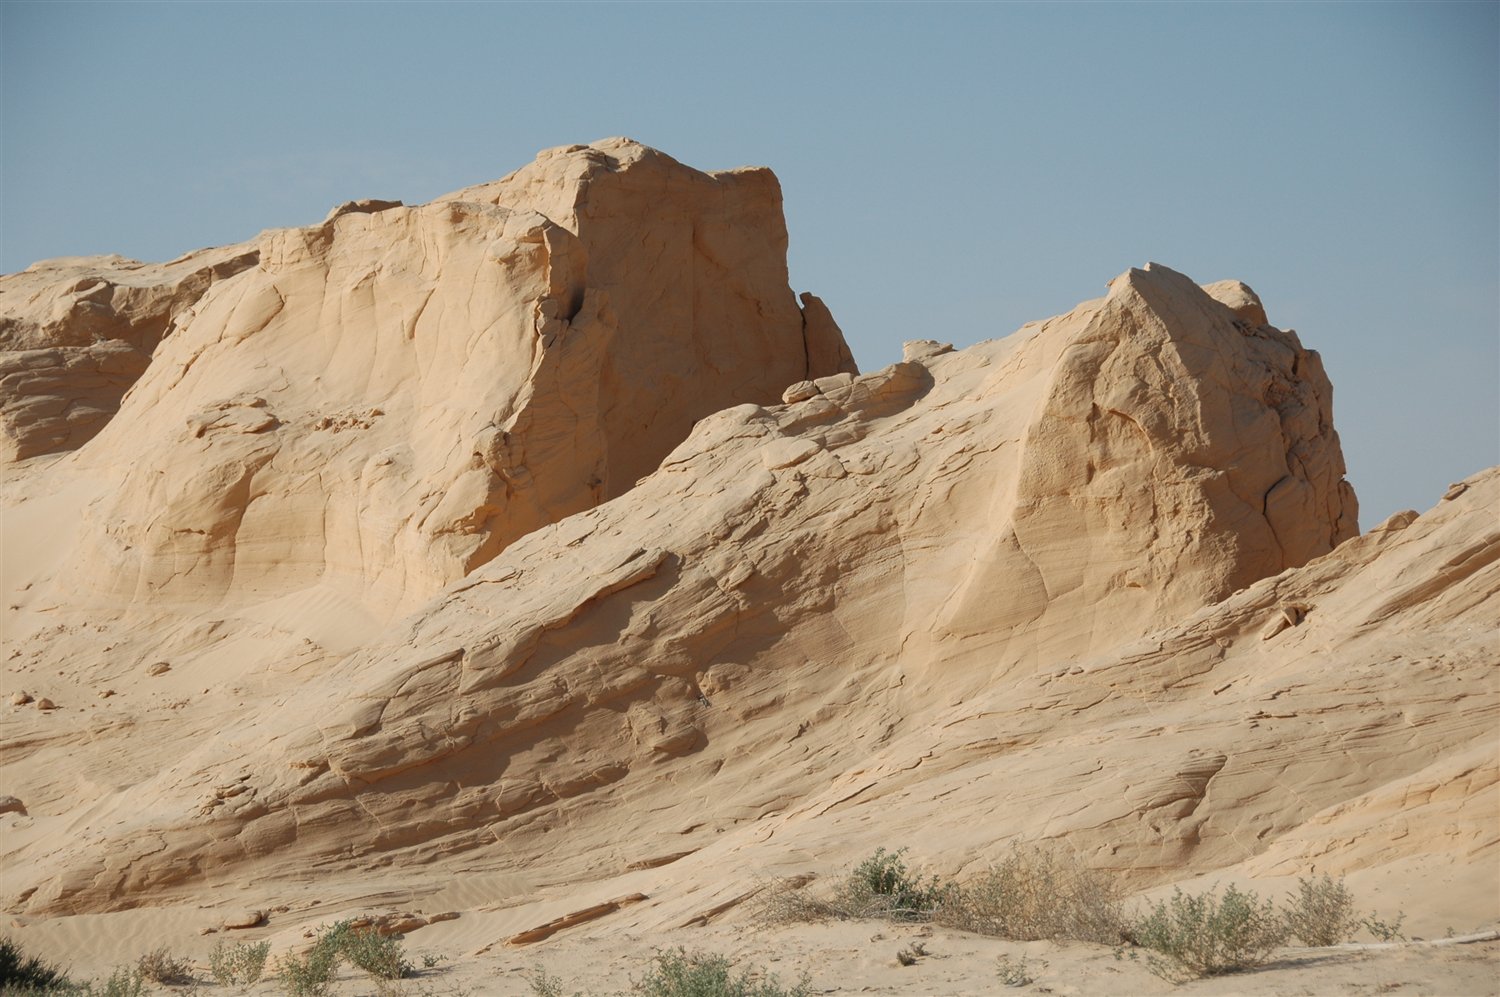 rzeźby z piasku